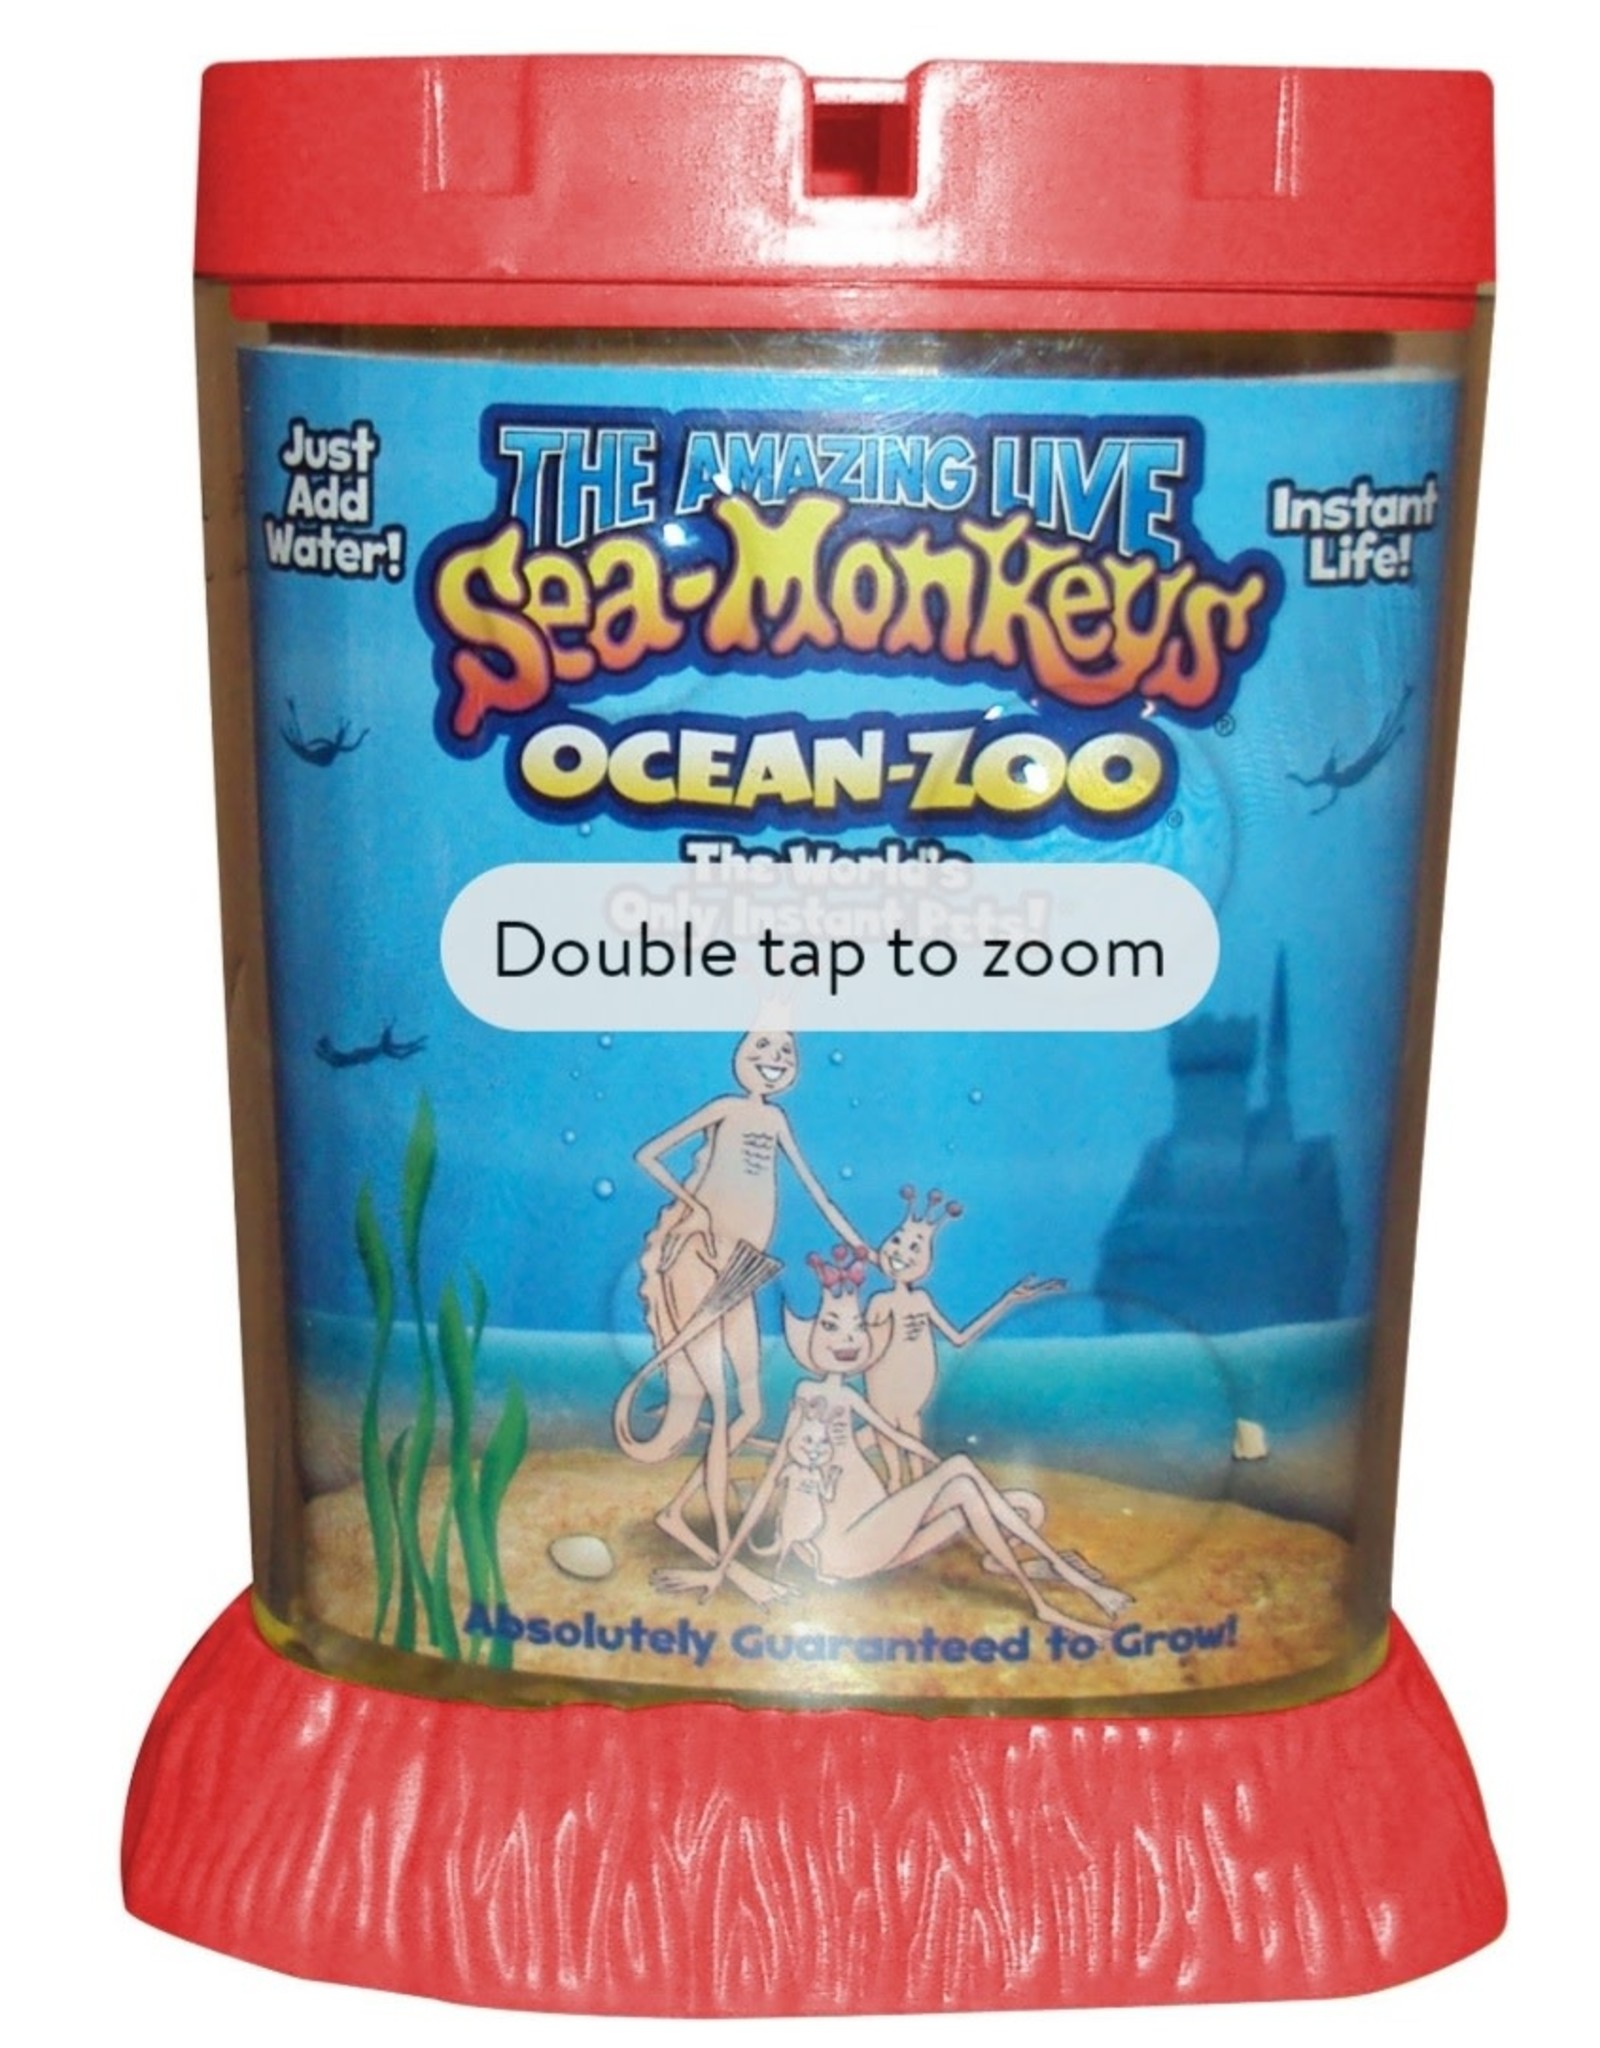 Schylling Sea-Monkeys Ocean Zoo